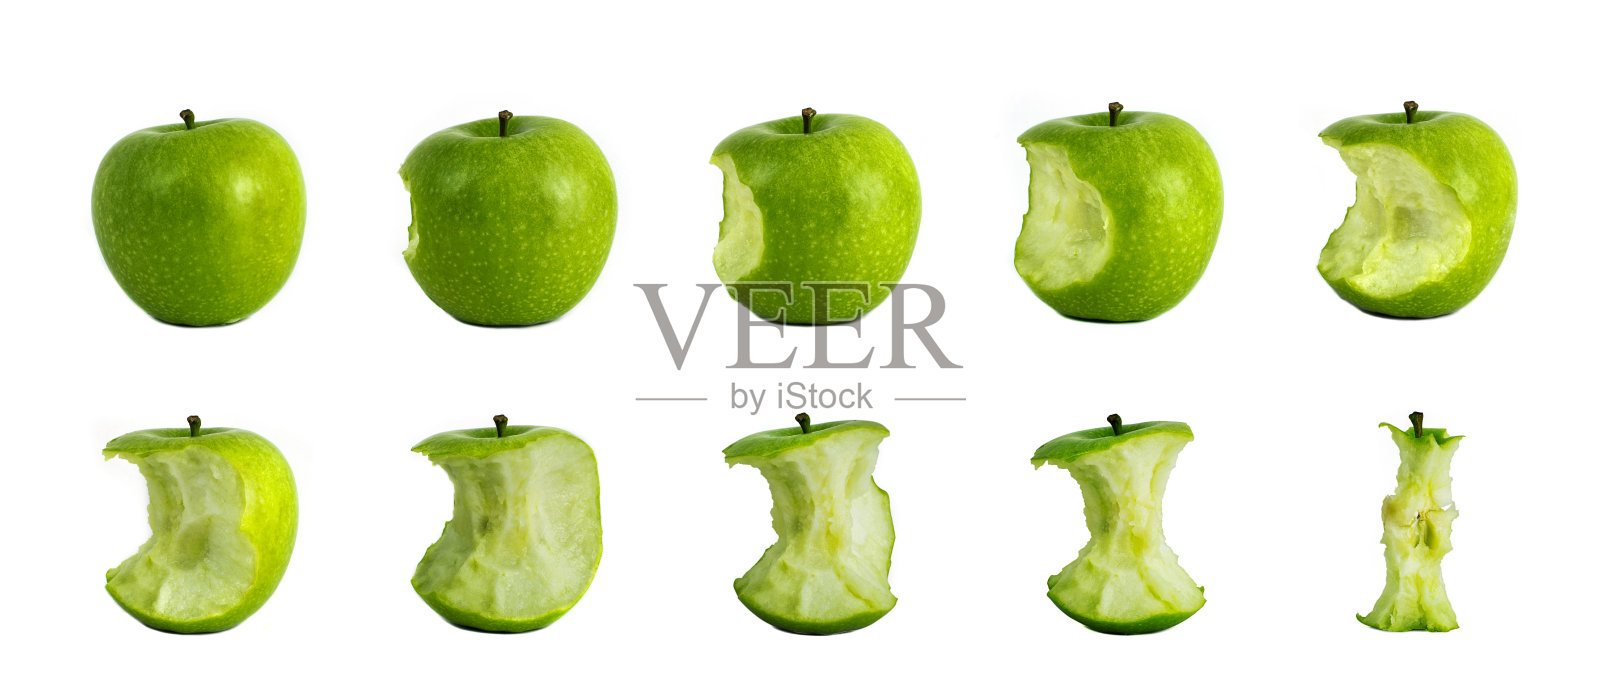 咬青苹果-吃青苹果的阶段照片摄影图片